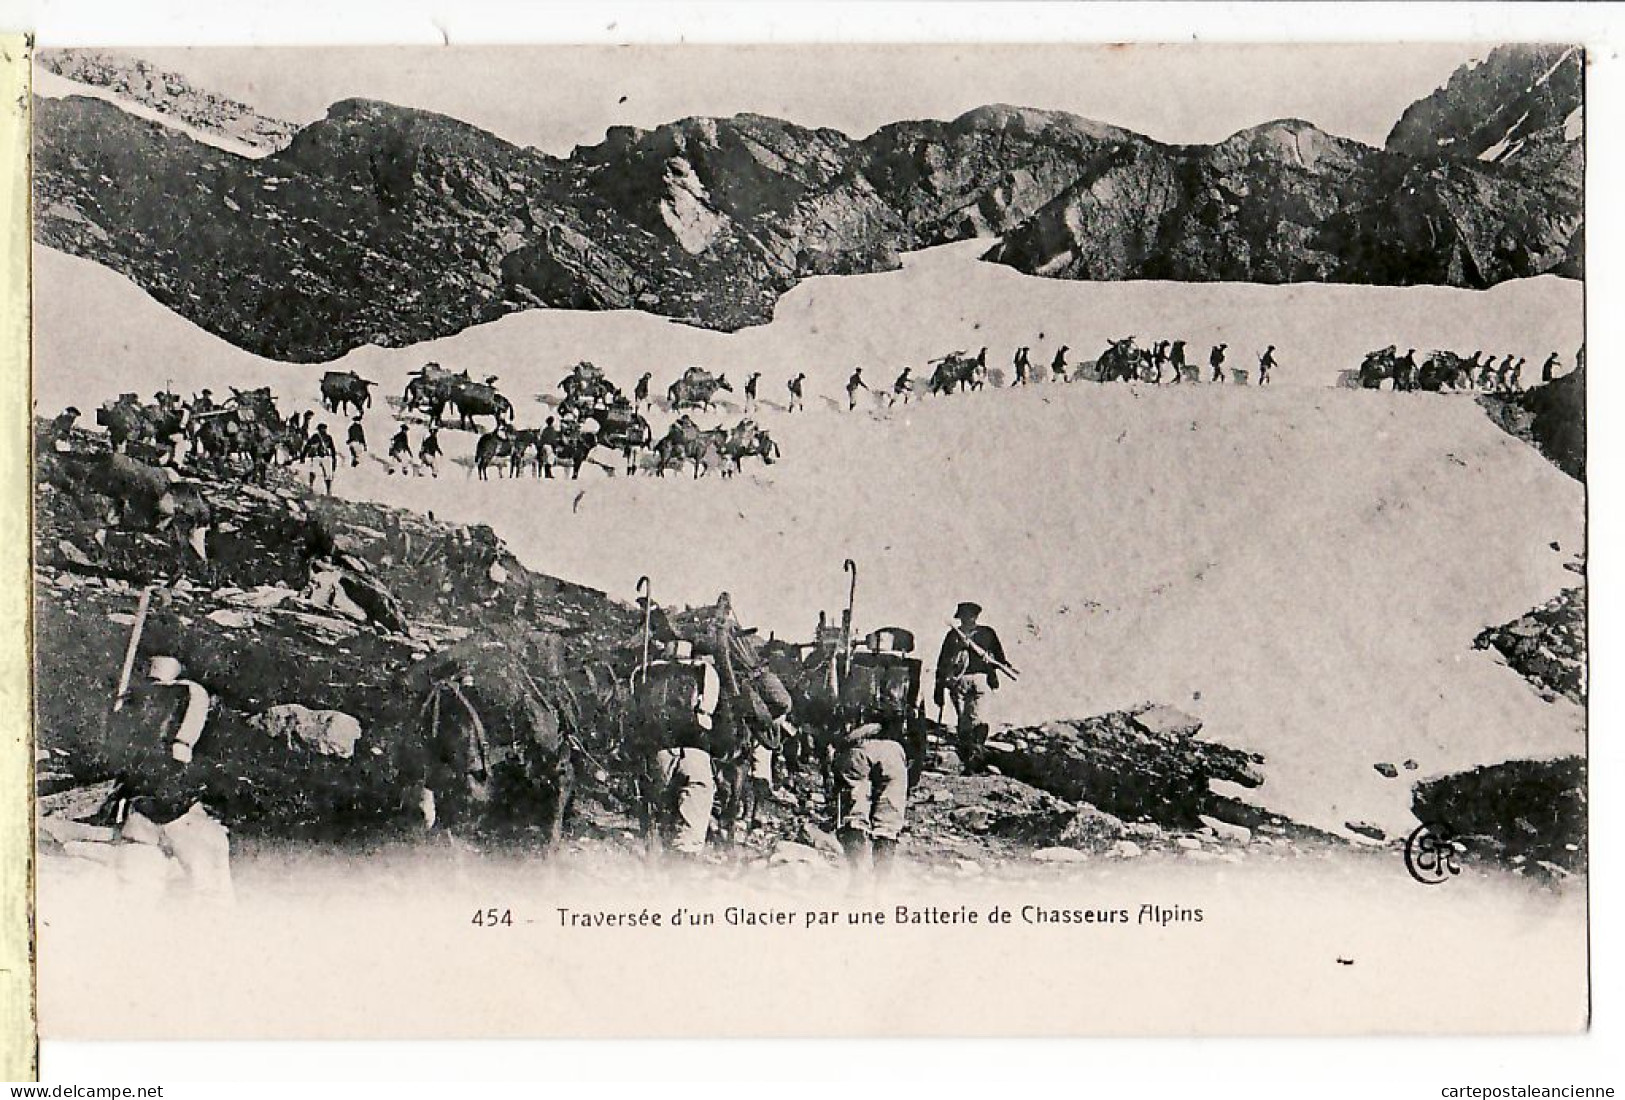 07834 ● Traversée D'un Glacier Par Une Batterie CHASSEURS ALPINS 1910s à TOURNIER Cours Charlemagne Lyon - Manoeuvres